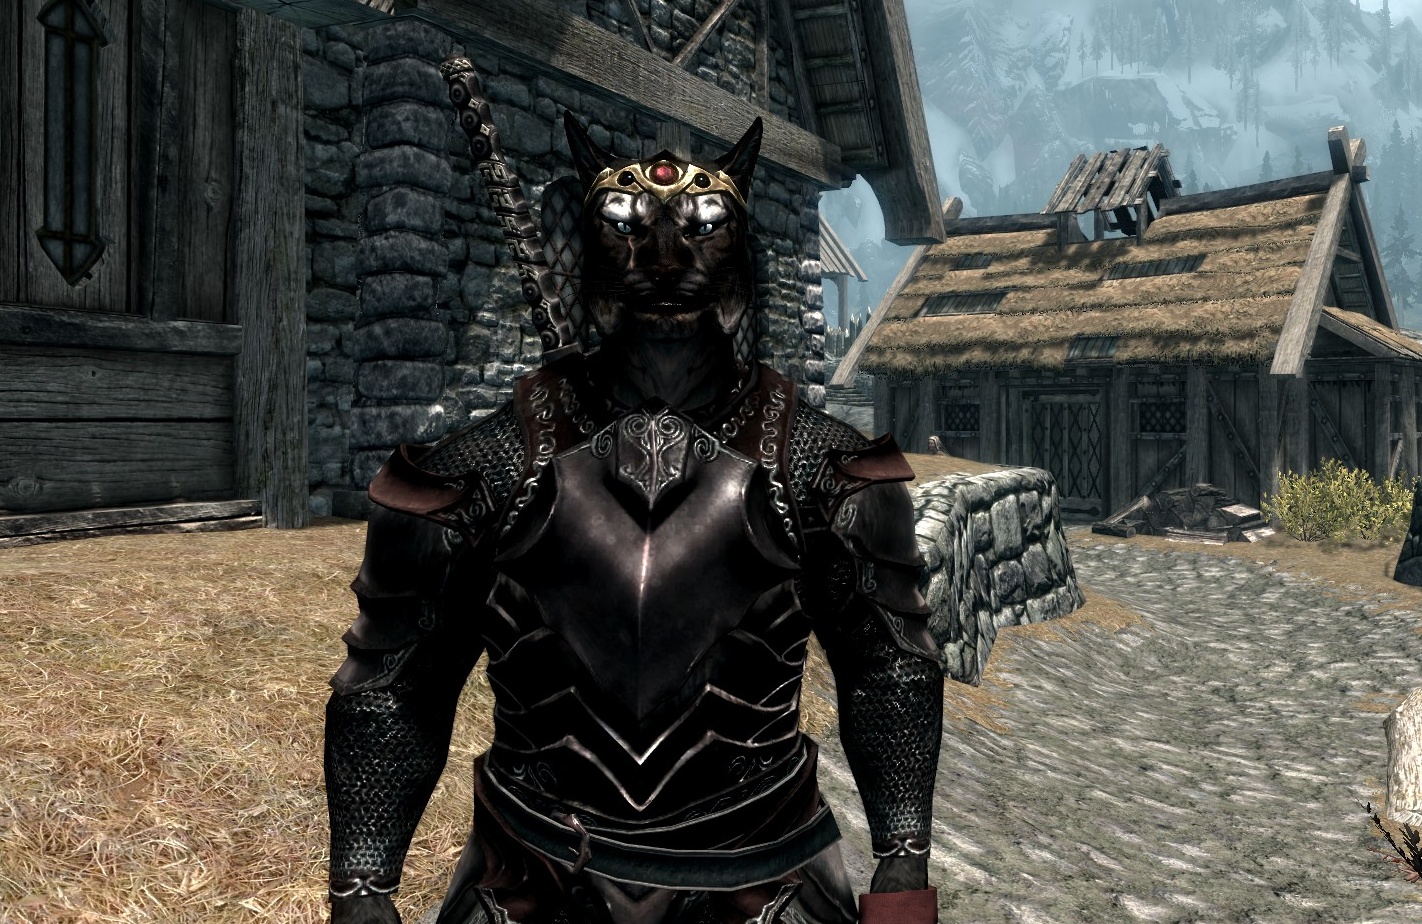 Best ebony armor in skyrim